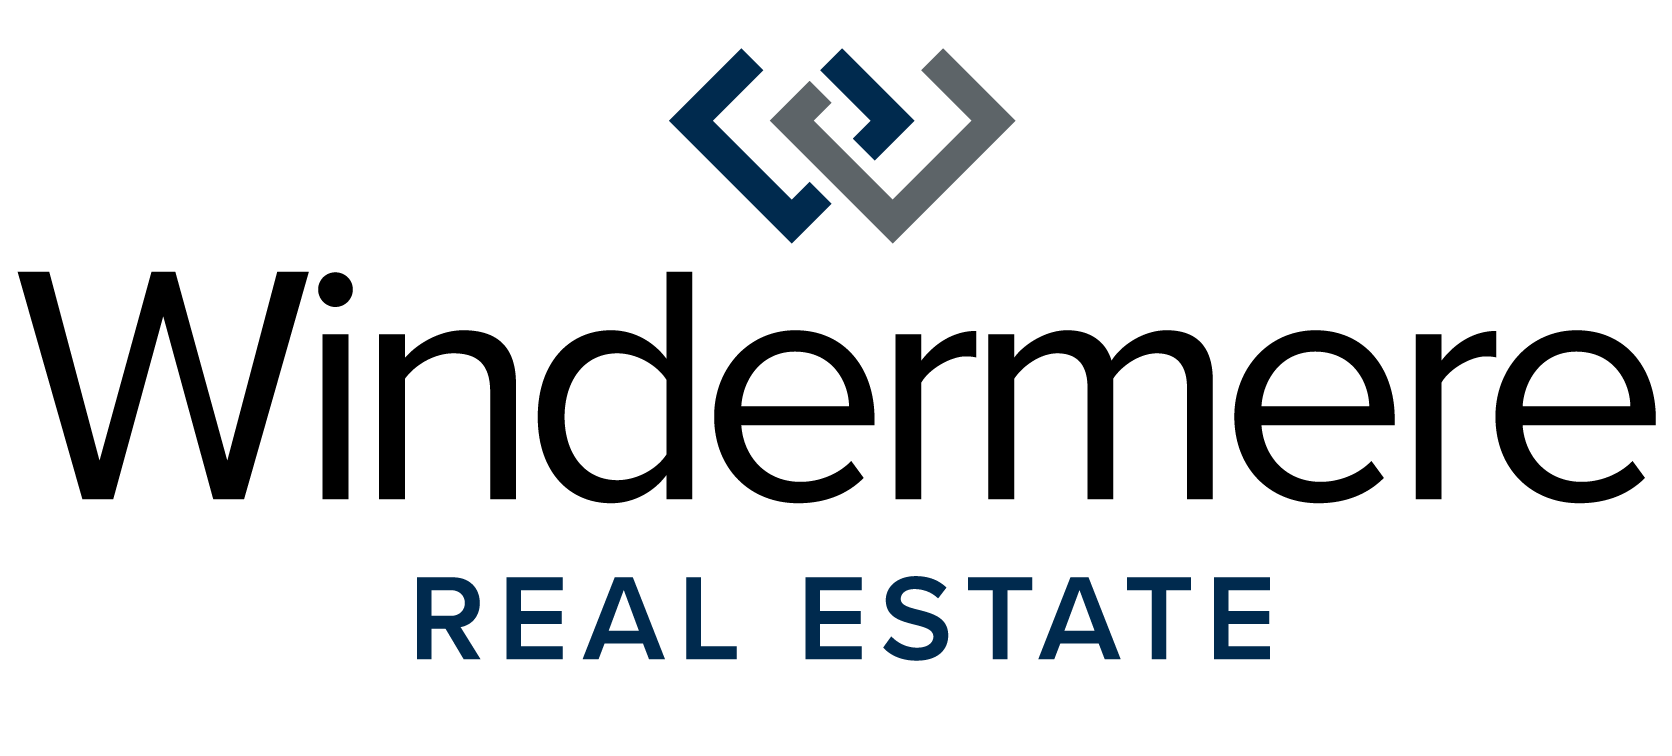 WRE Real Estate logo